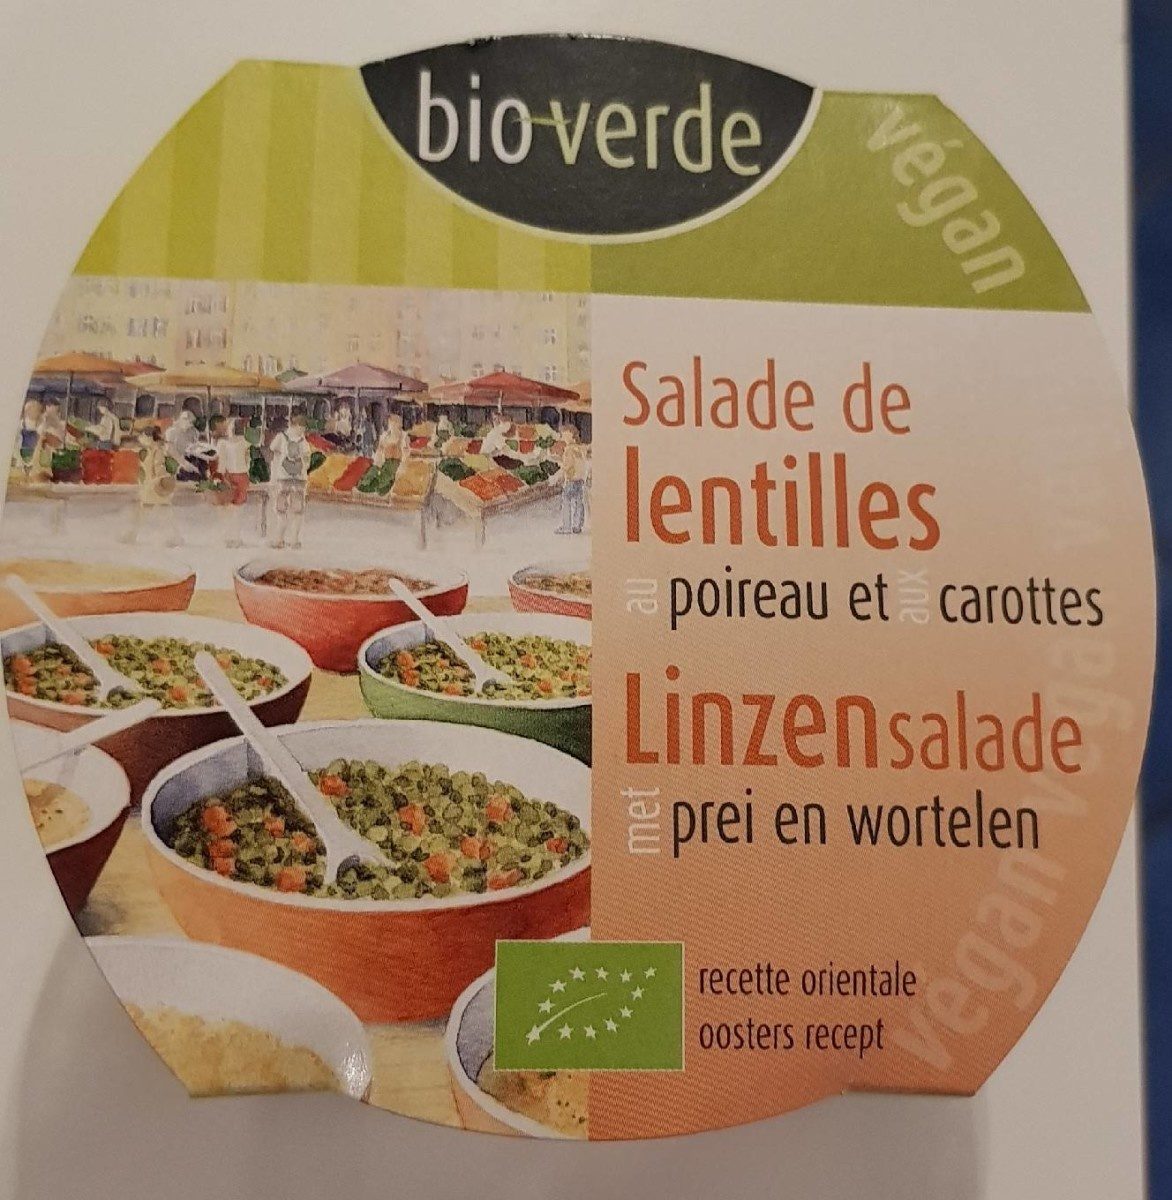 Salade de lentilles poireau/carottes - Product - fr